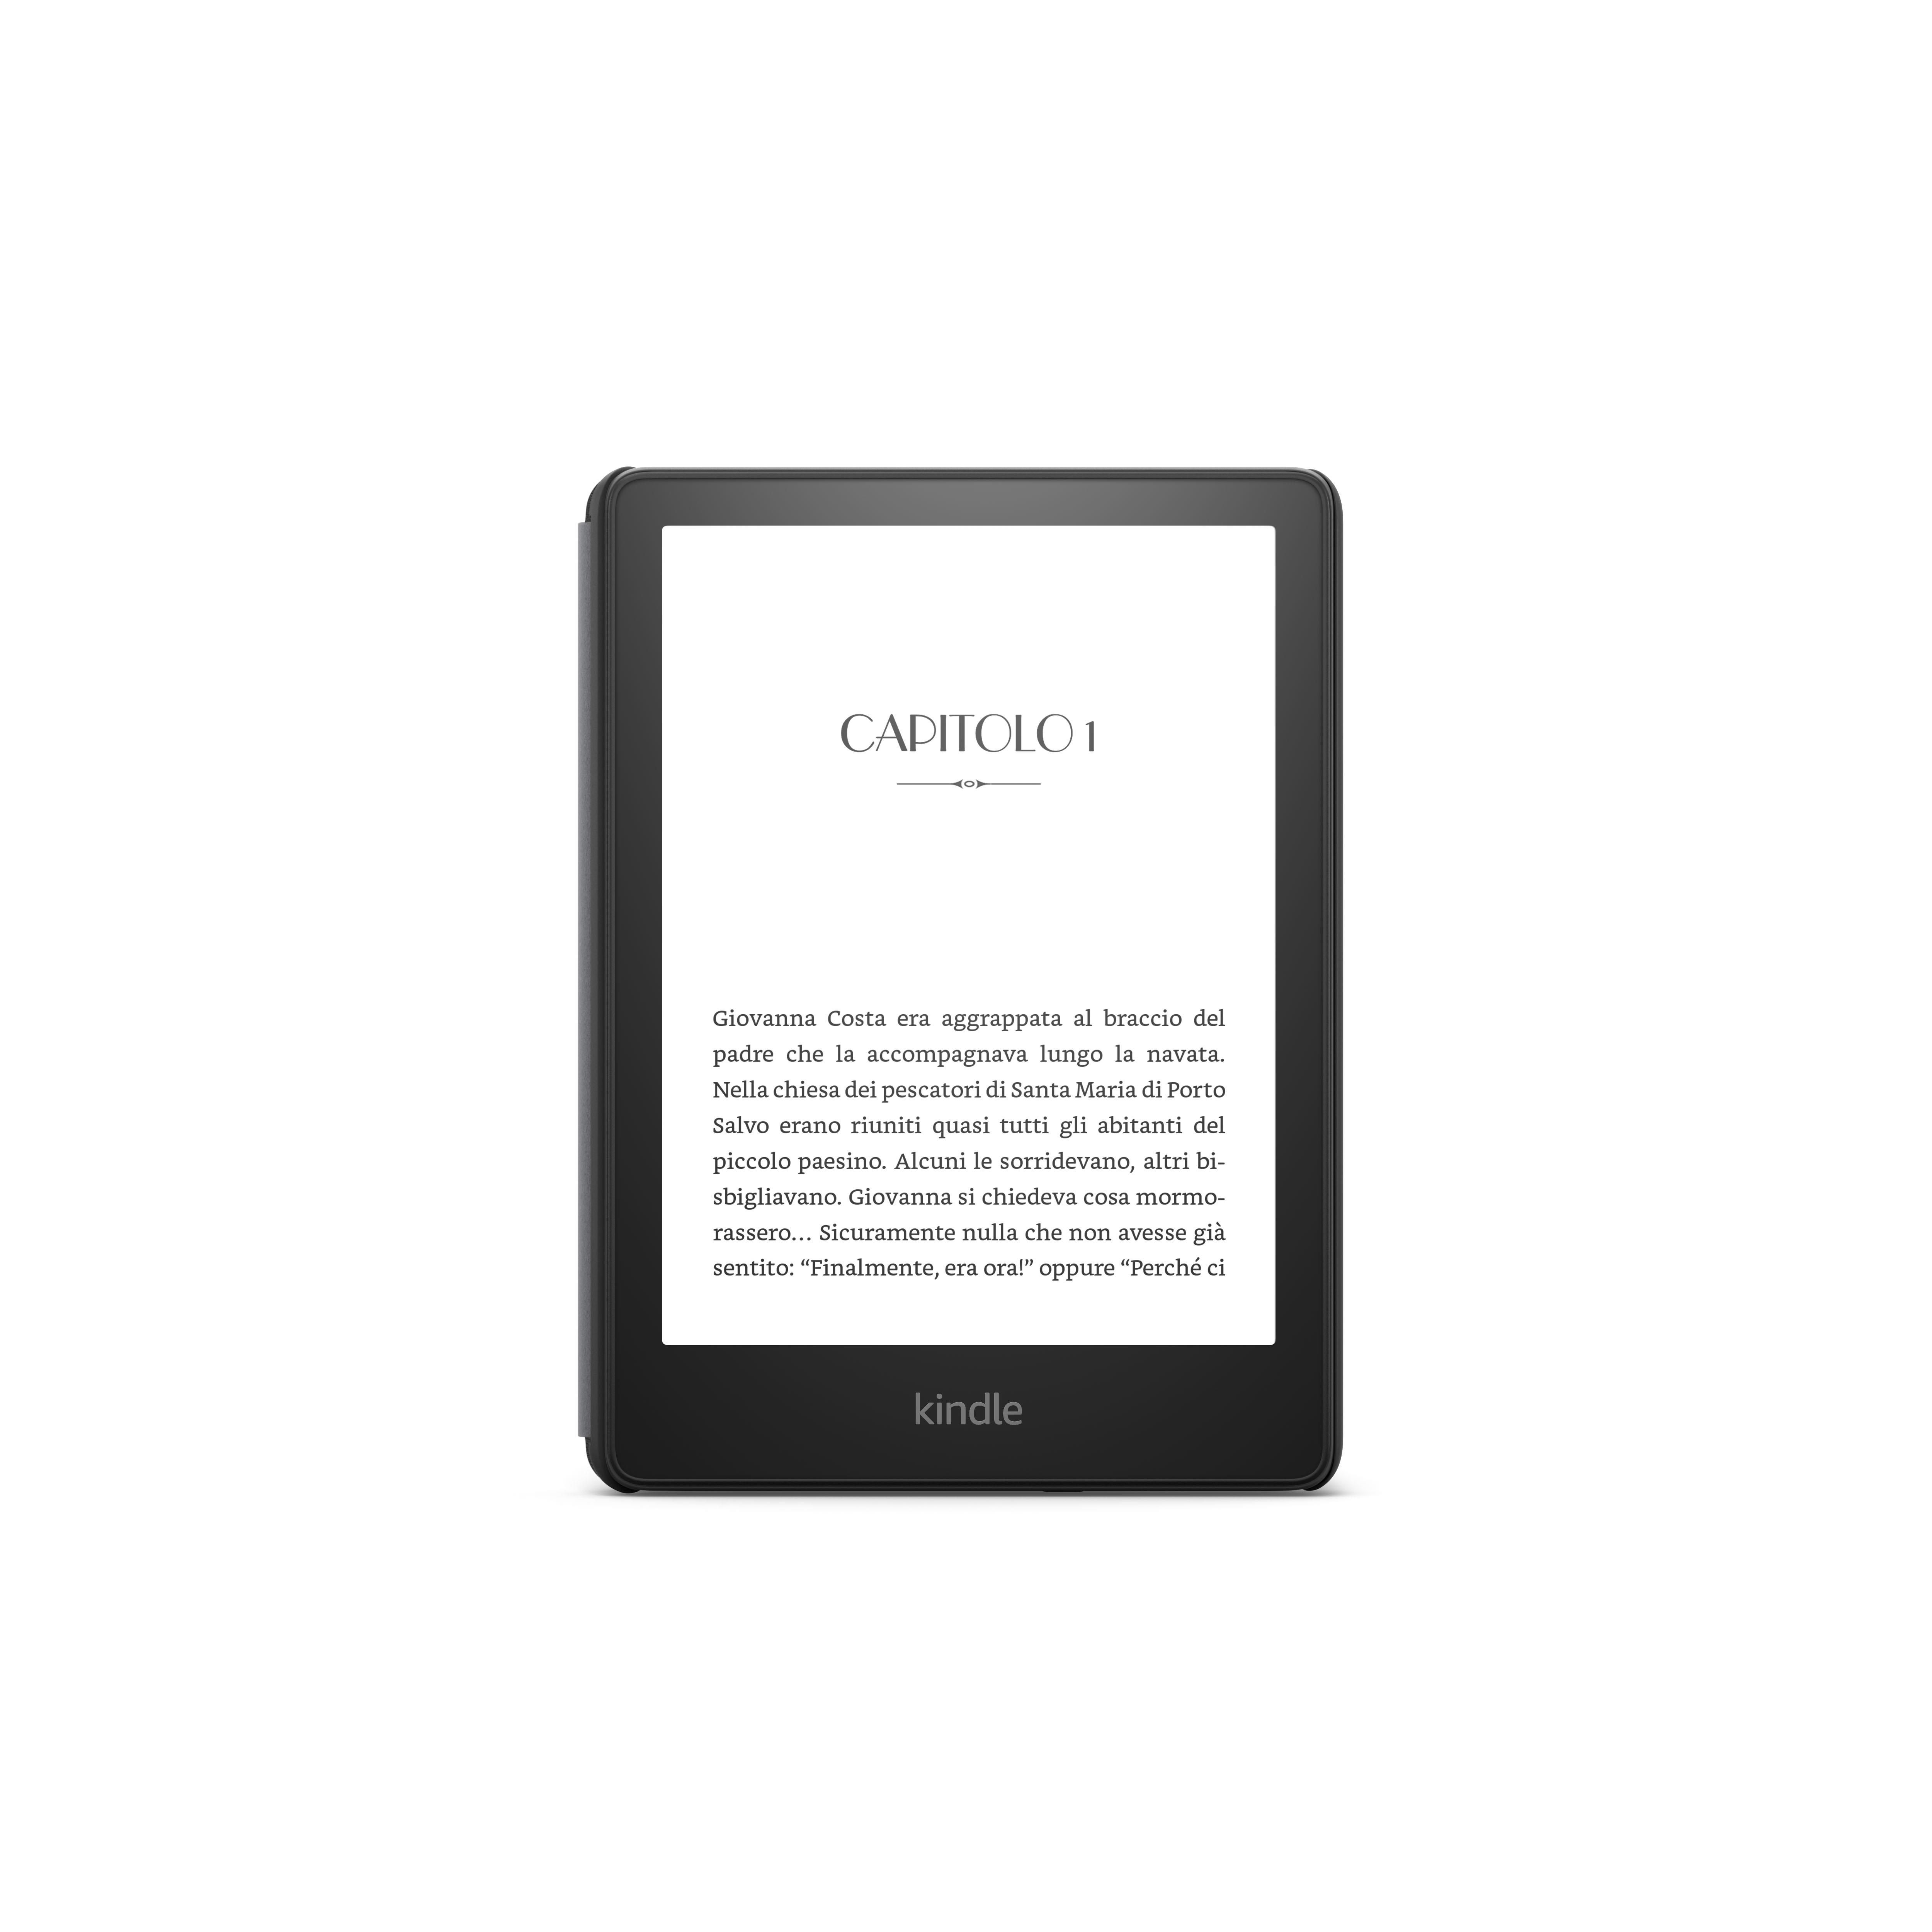 Amazon Kindle Paperwhite acqua fissa eReader WiFi con offerte speciali 2018 NUOVO 